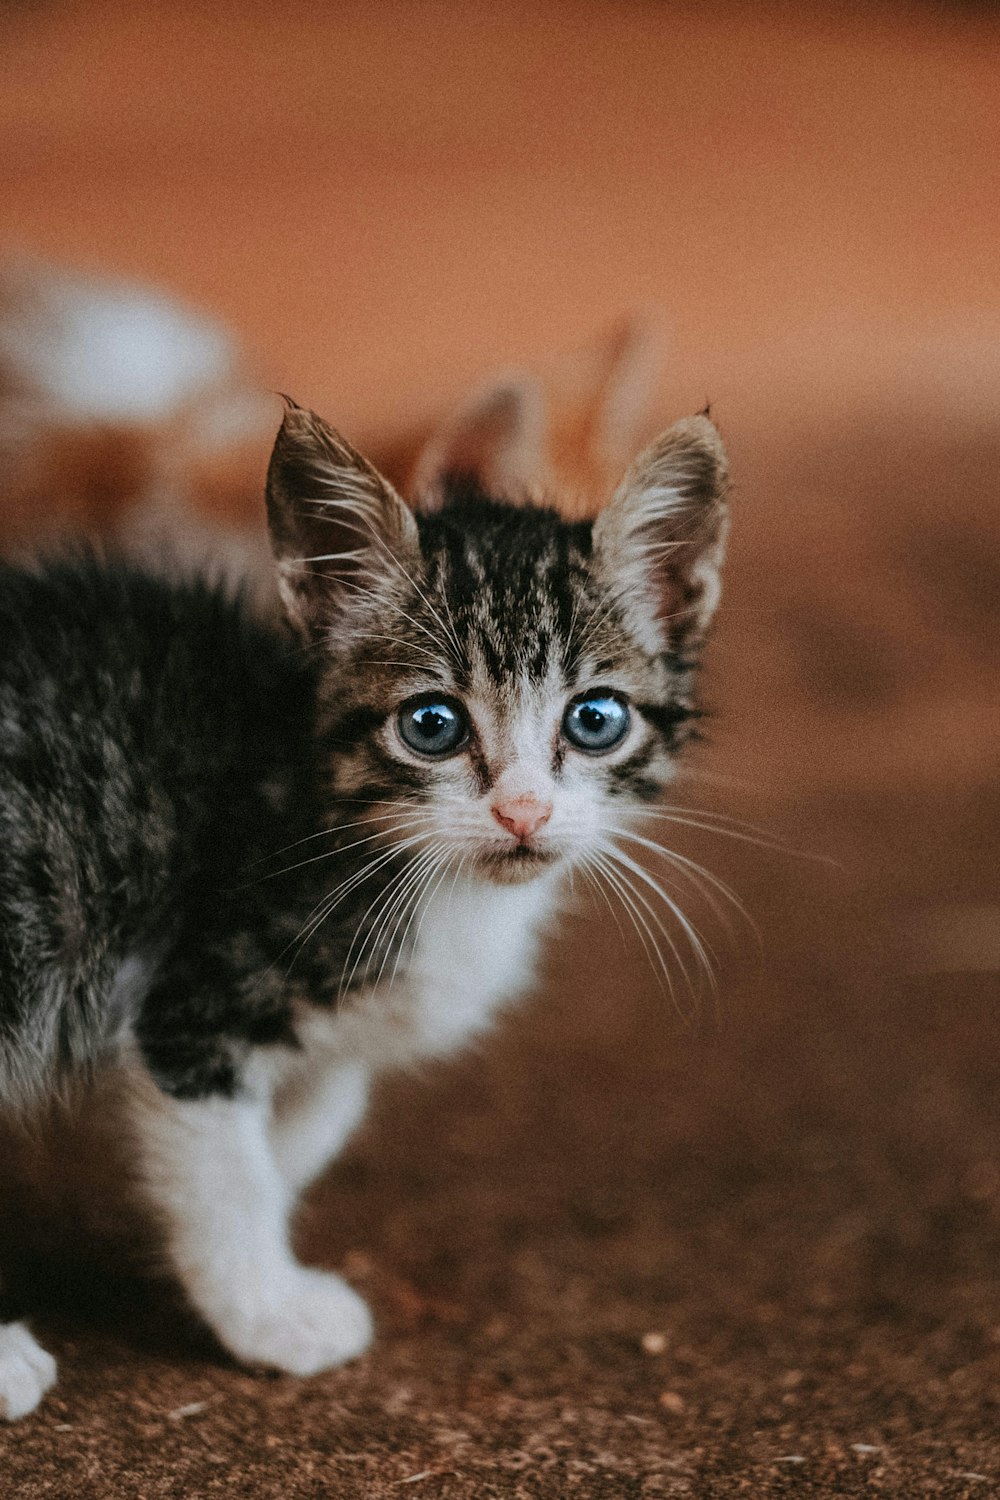 파란 눈을 가진 작은 새끼 고양이가 바닥에 서 있습니다.